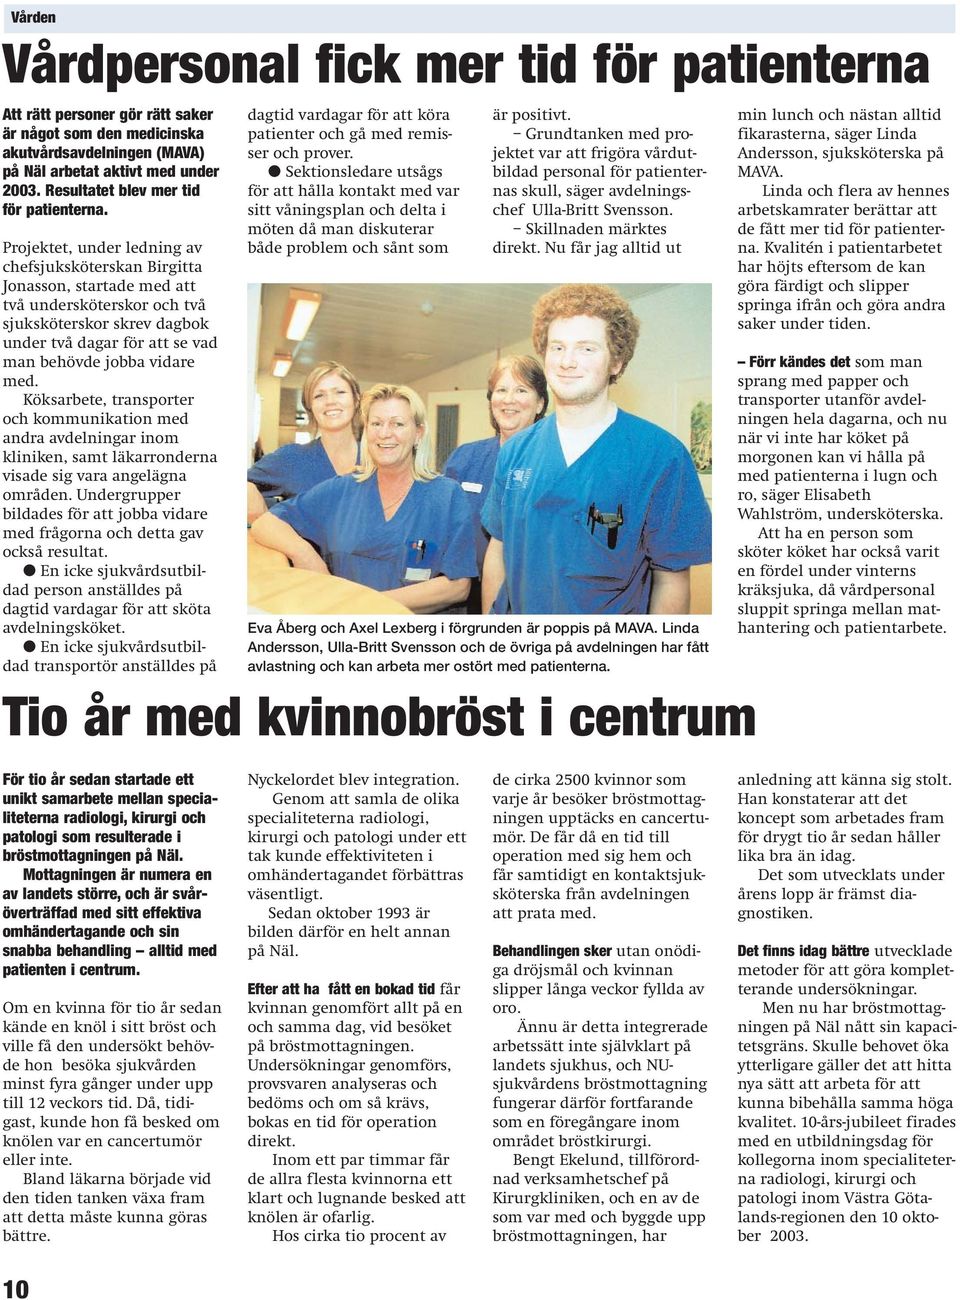 Projektet, under ledning av chefsjuksköterskan Birgitta Jonasson, startade med att två undersköterskor och två sjuksköterskor skrev dagbok under två dagar för att se vad man behövde jobba vidare med.